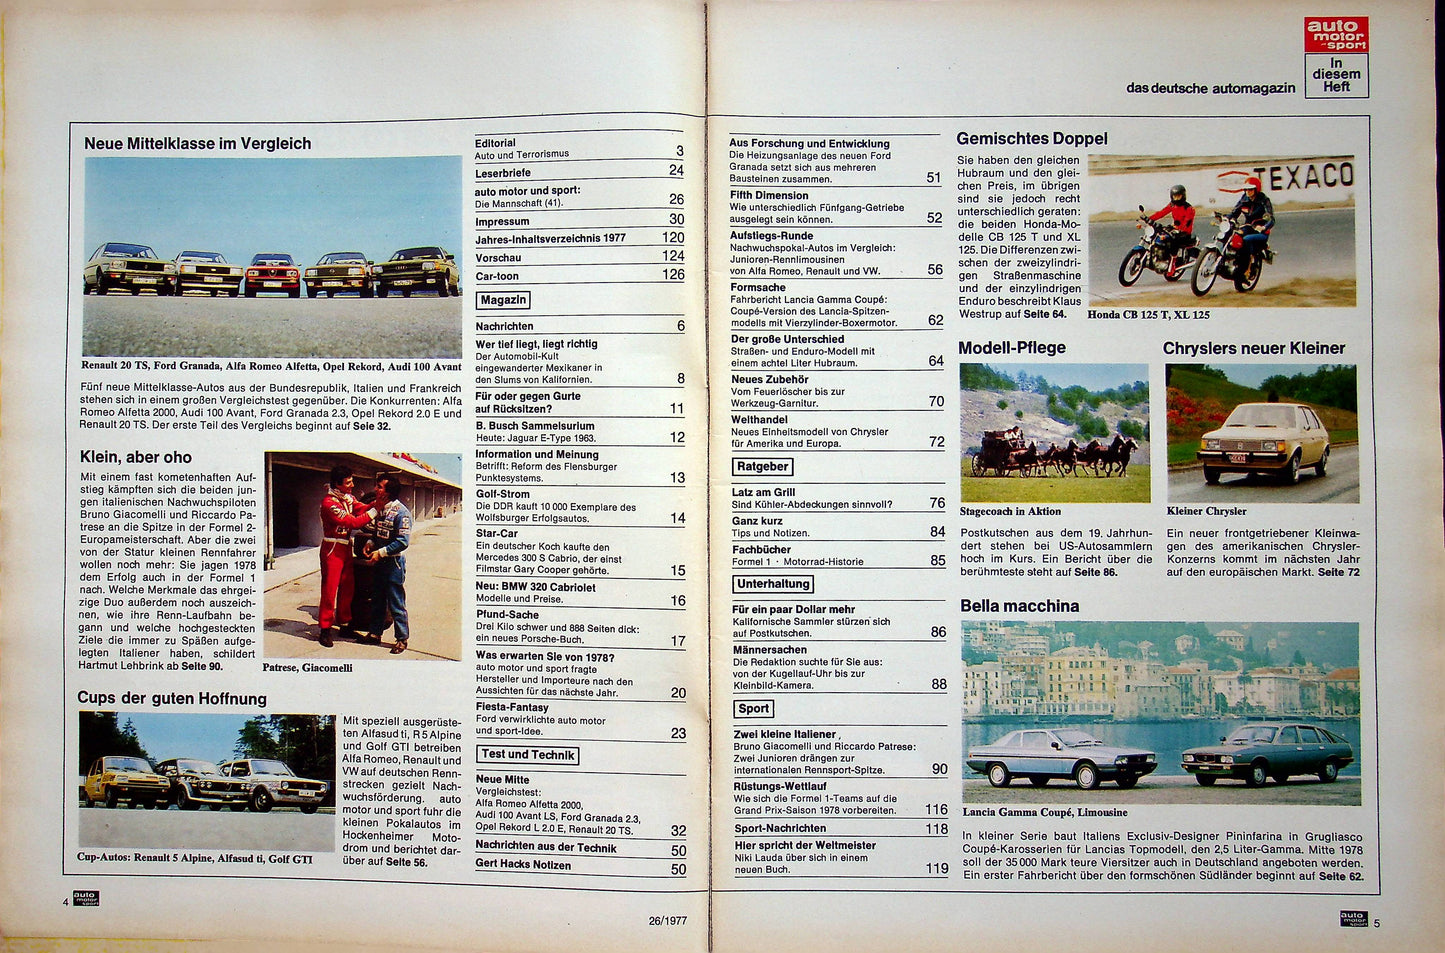 Auto Motor und Sport 26/1977